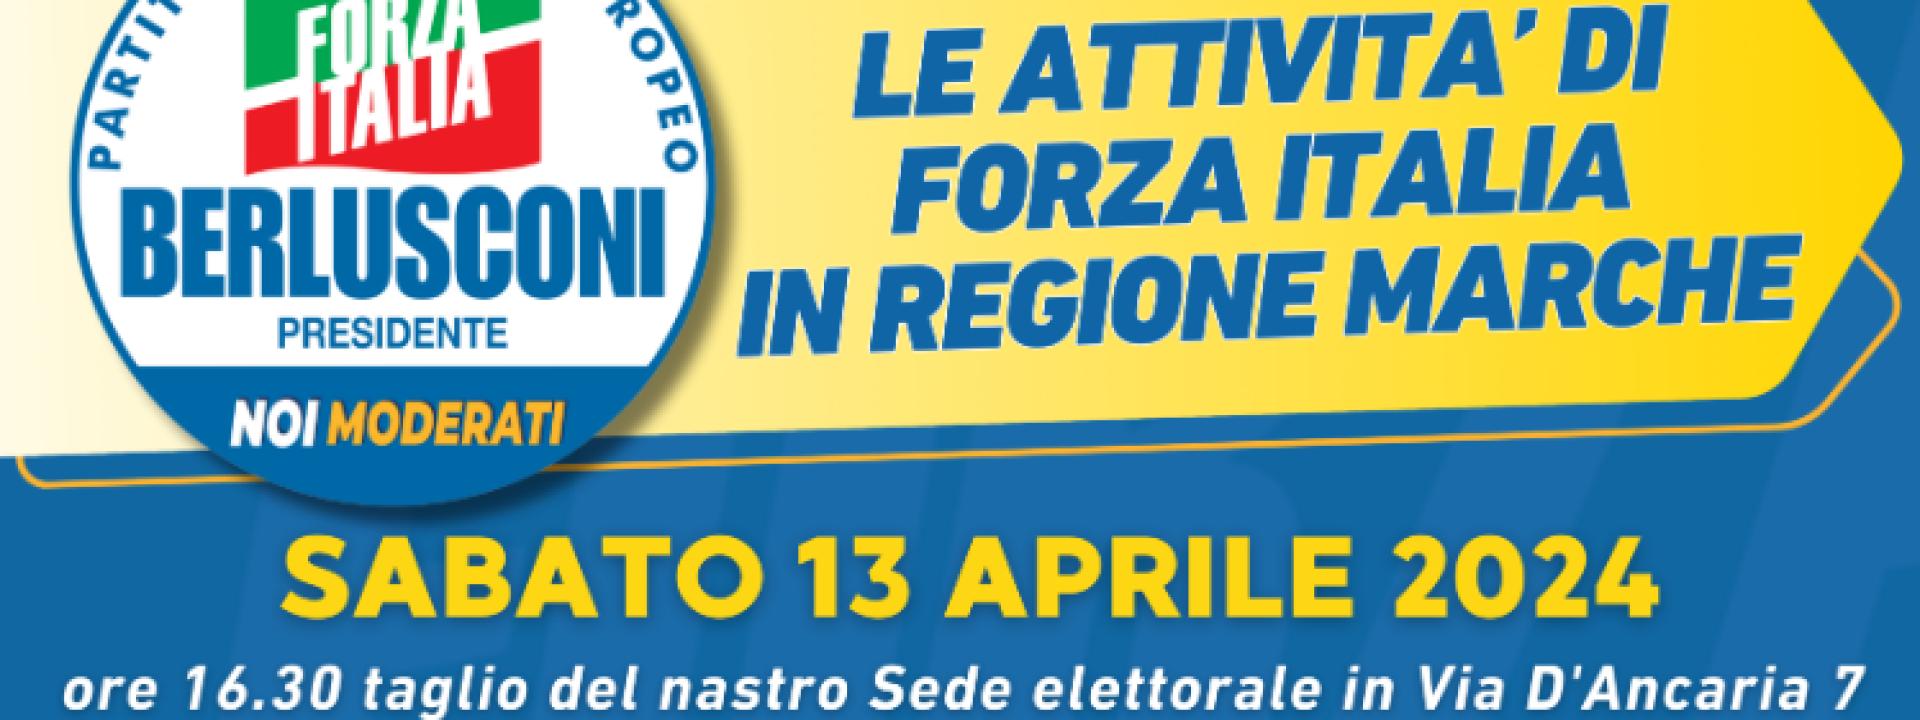 Marche - Forza Italia incontra la cittadinanza ad Ascoli Piceno